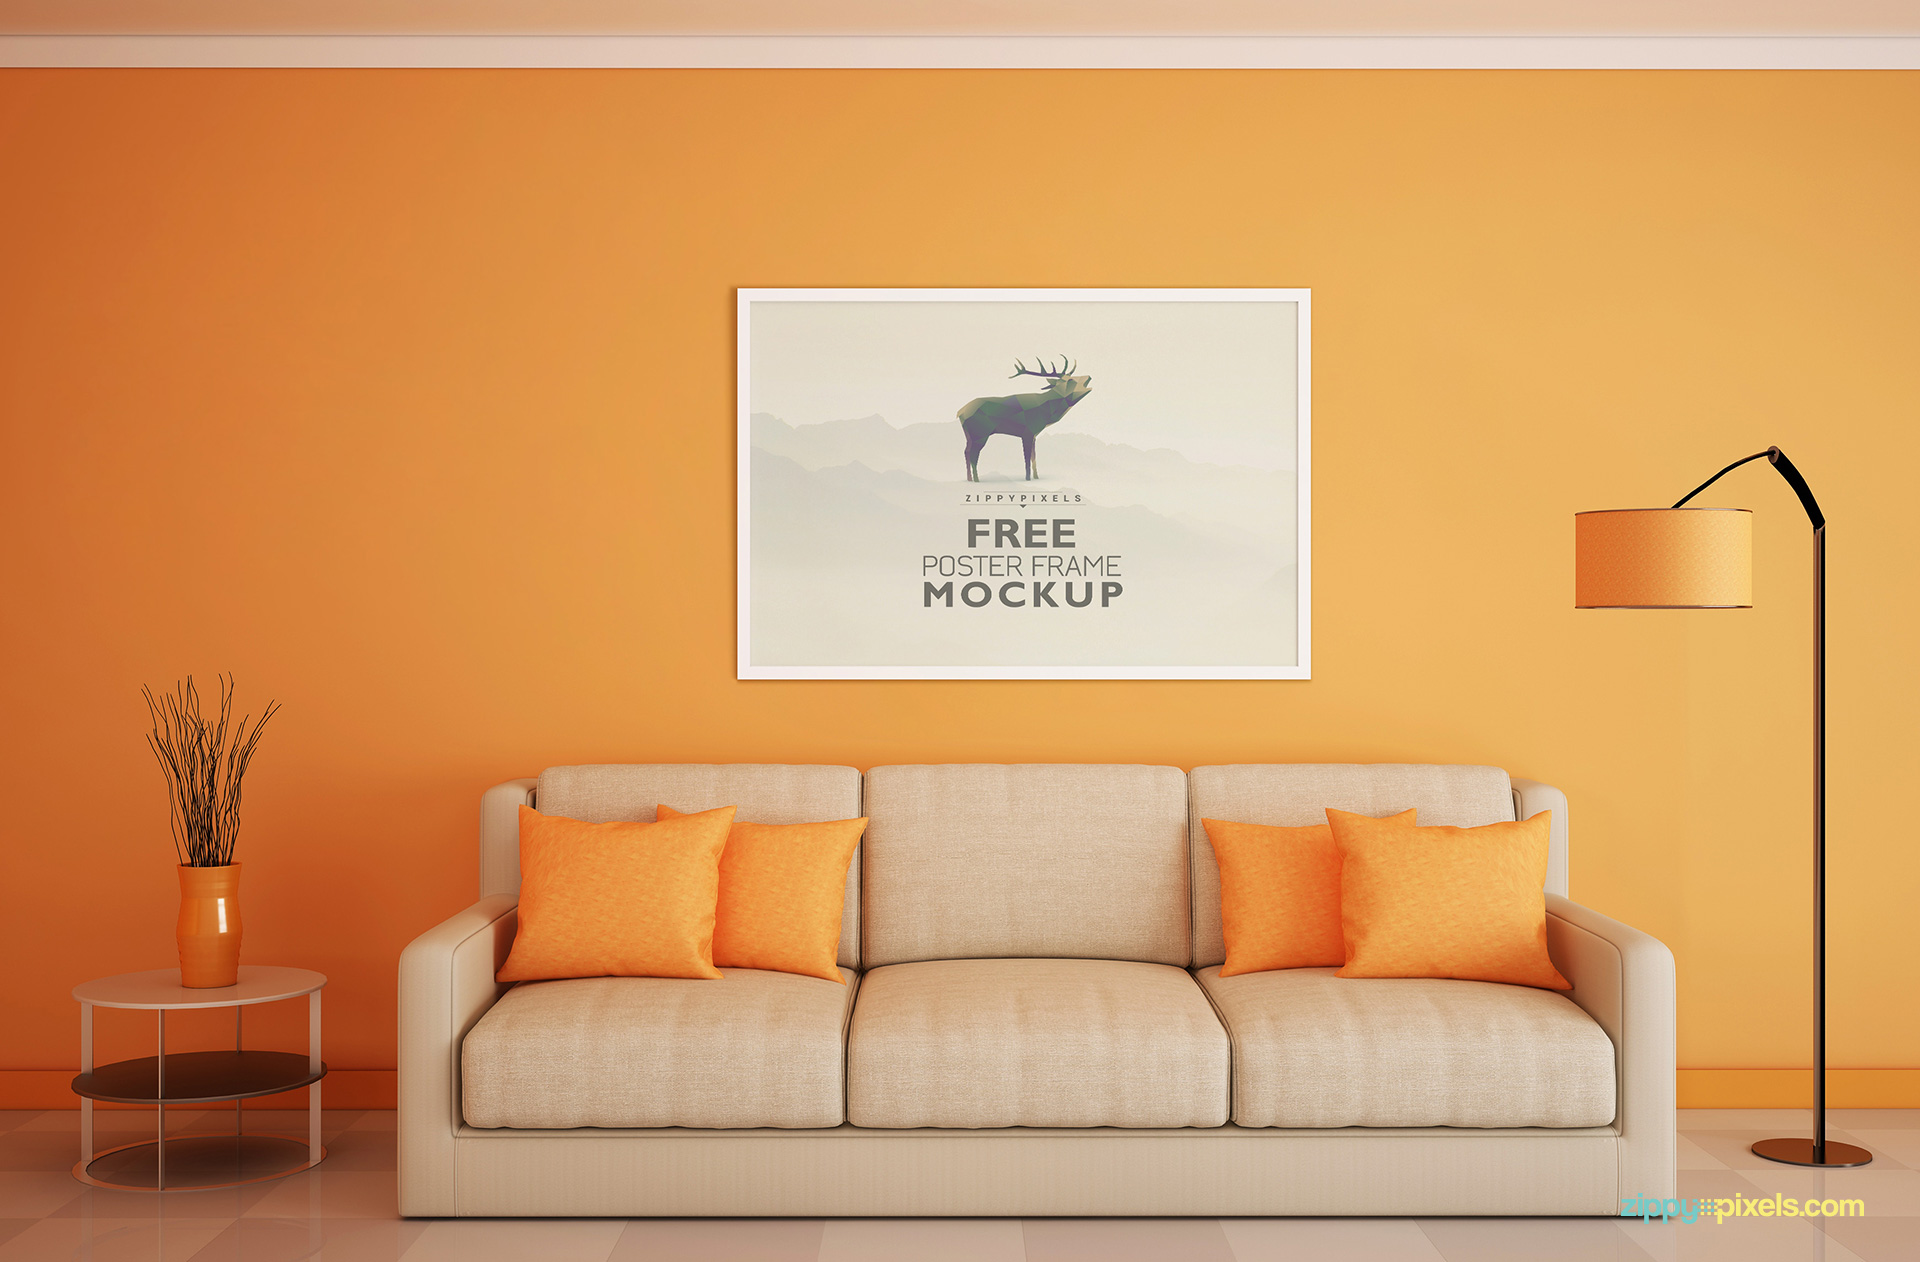 Download Free Frame Mockup for Poster Display ZippyPixels